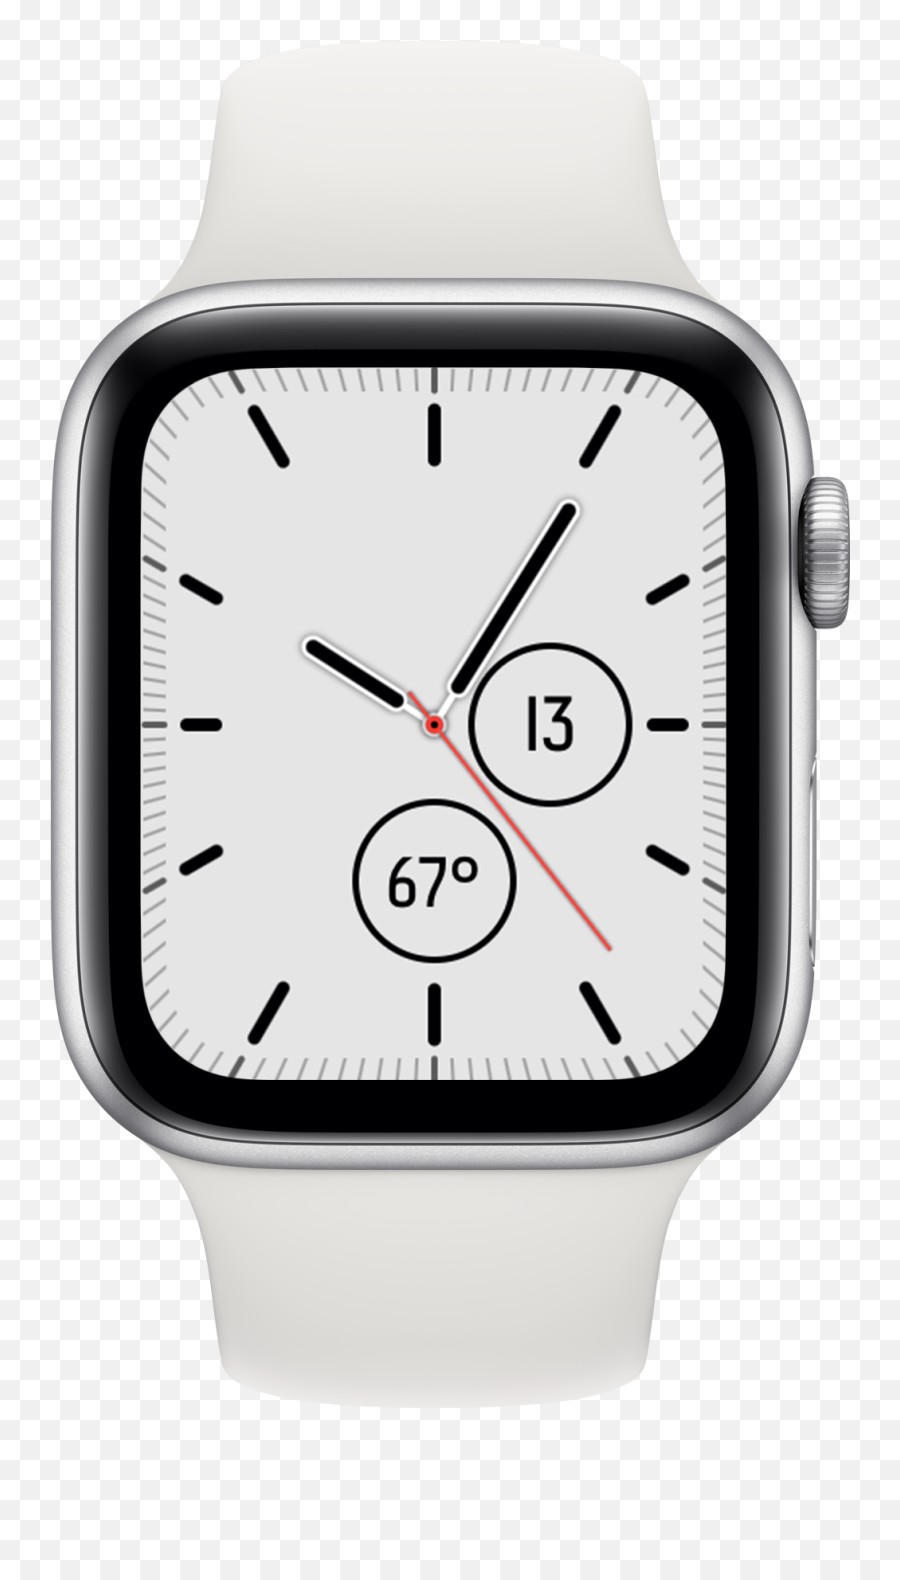 David Smith Independent Ios Developer - T500 Smart Watch Price In India Emoji,Apple Watch Emoji